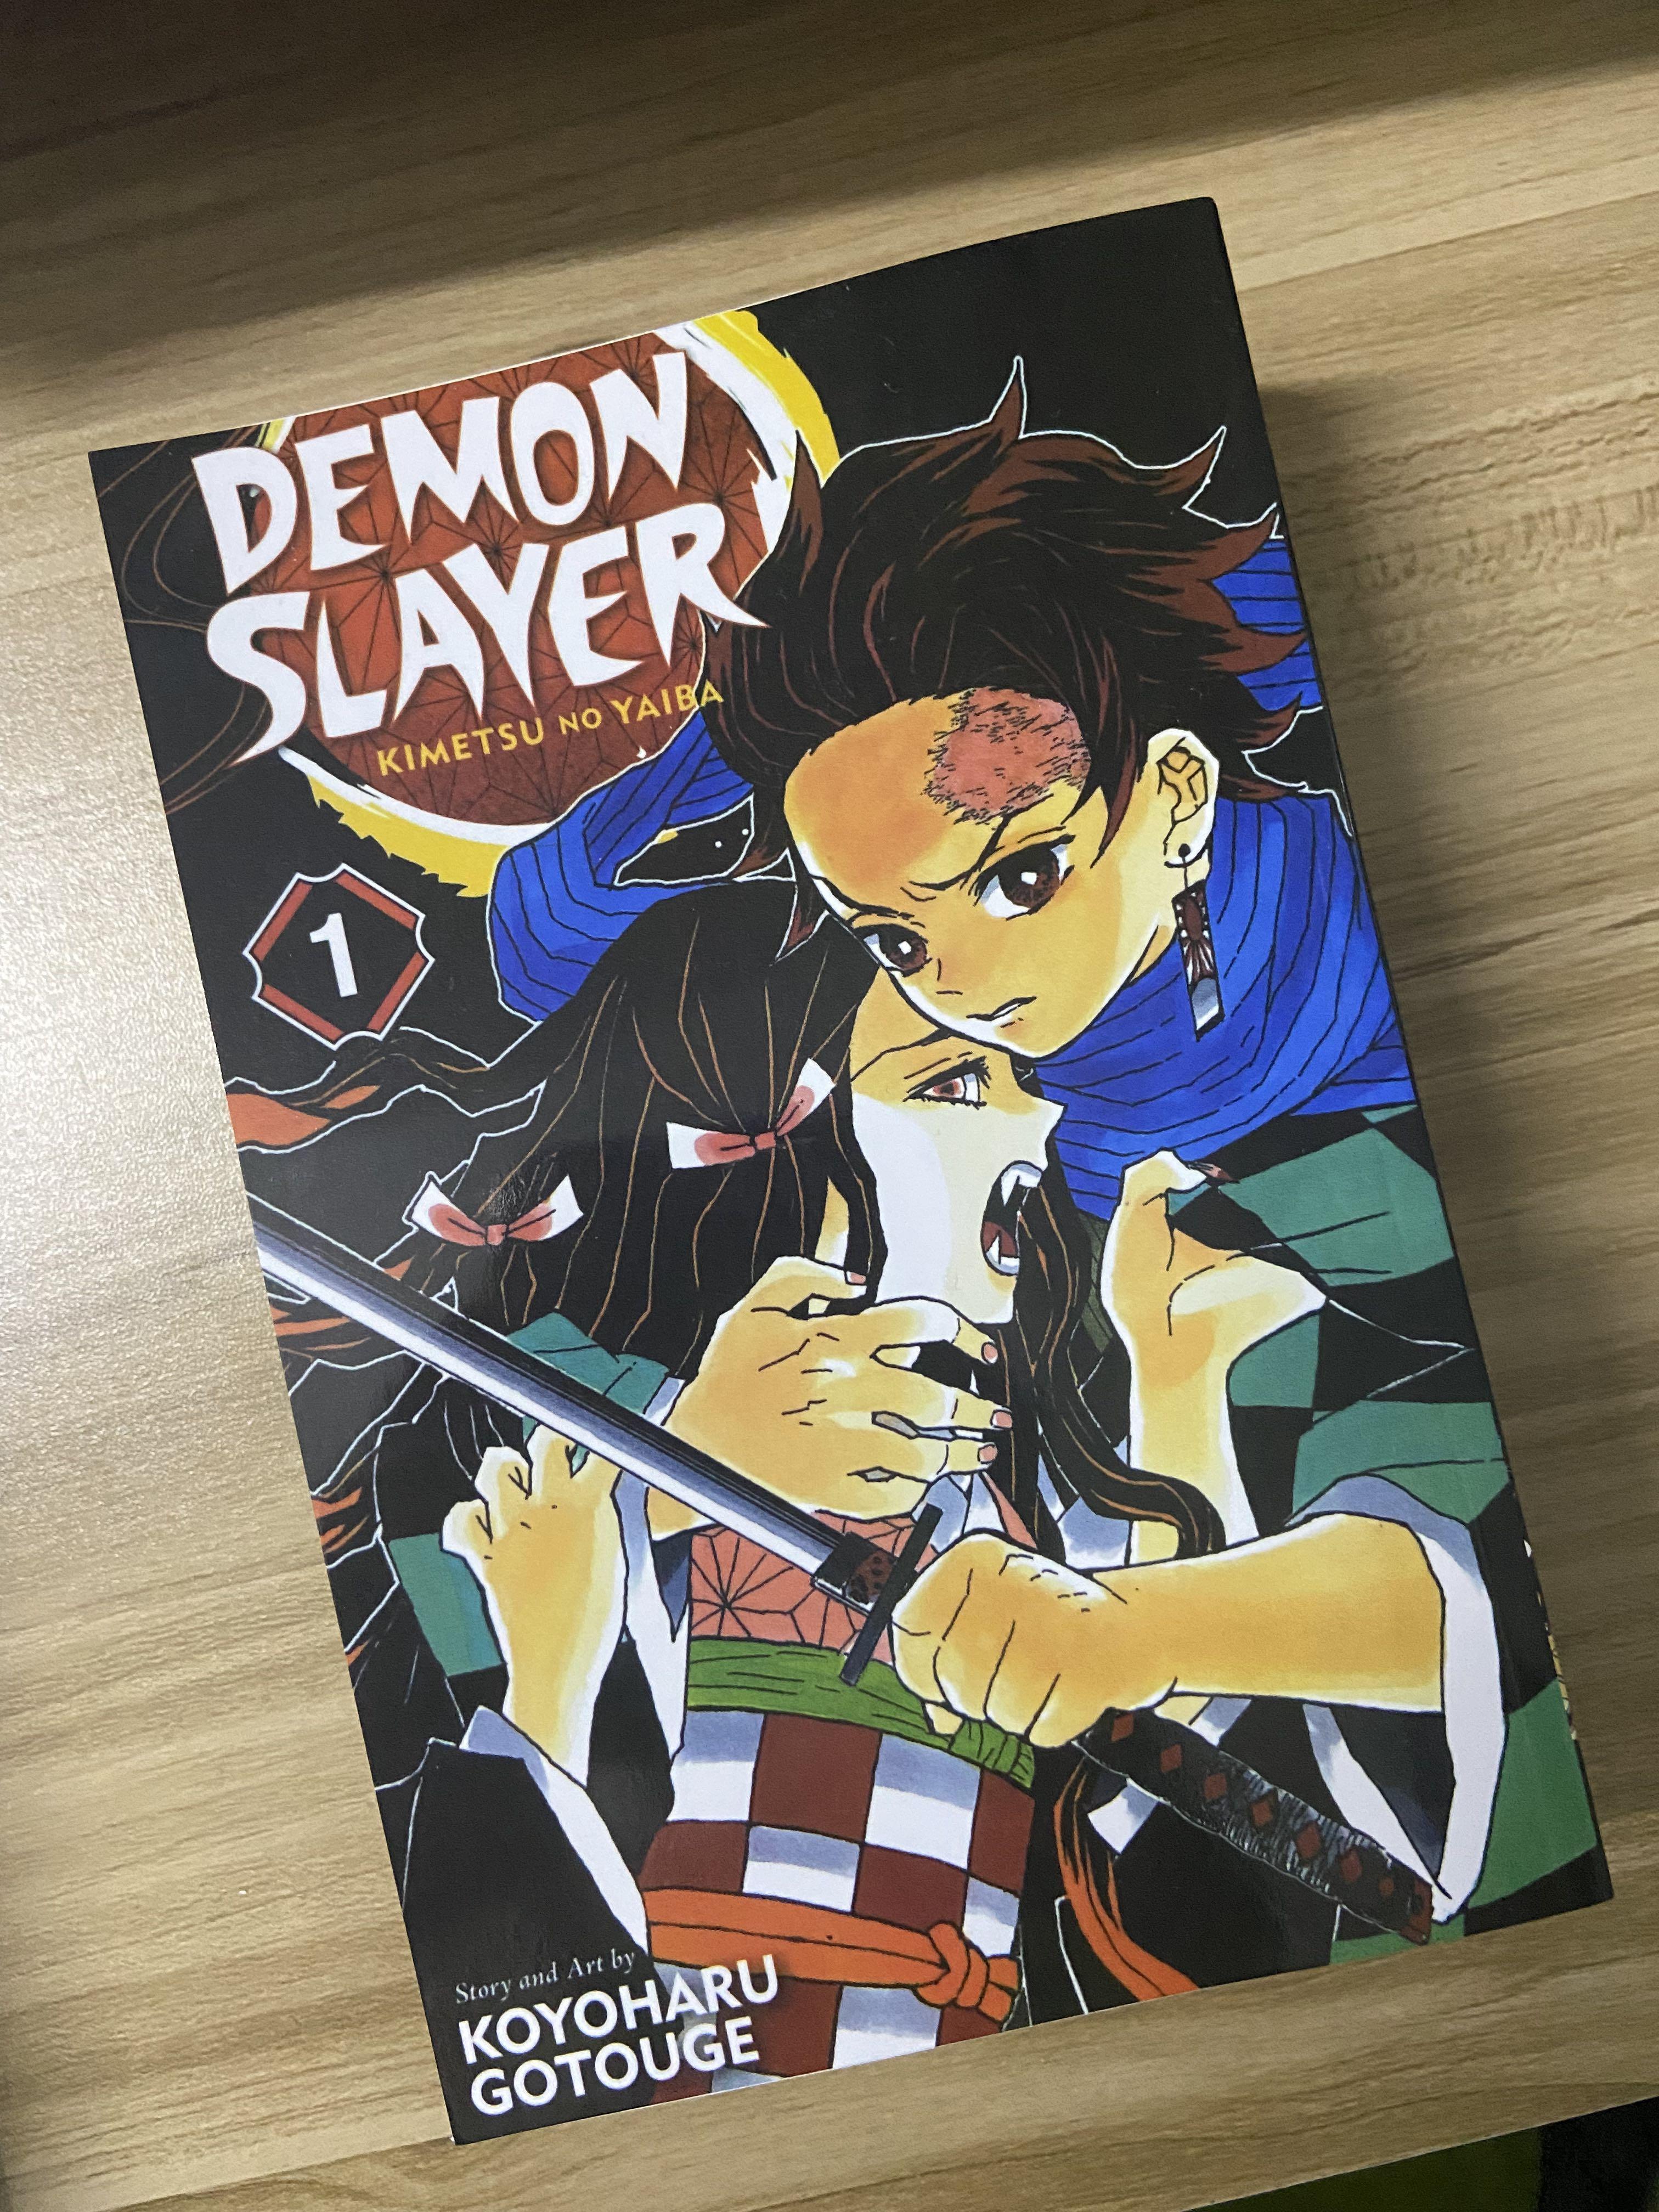 Demon Slayer: Kimetsu no Yaiba Manga Volume 3